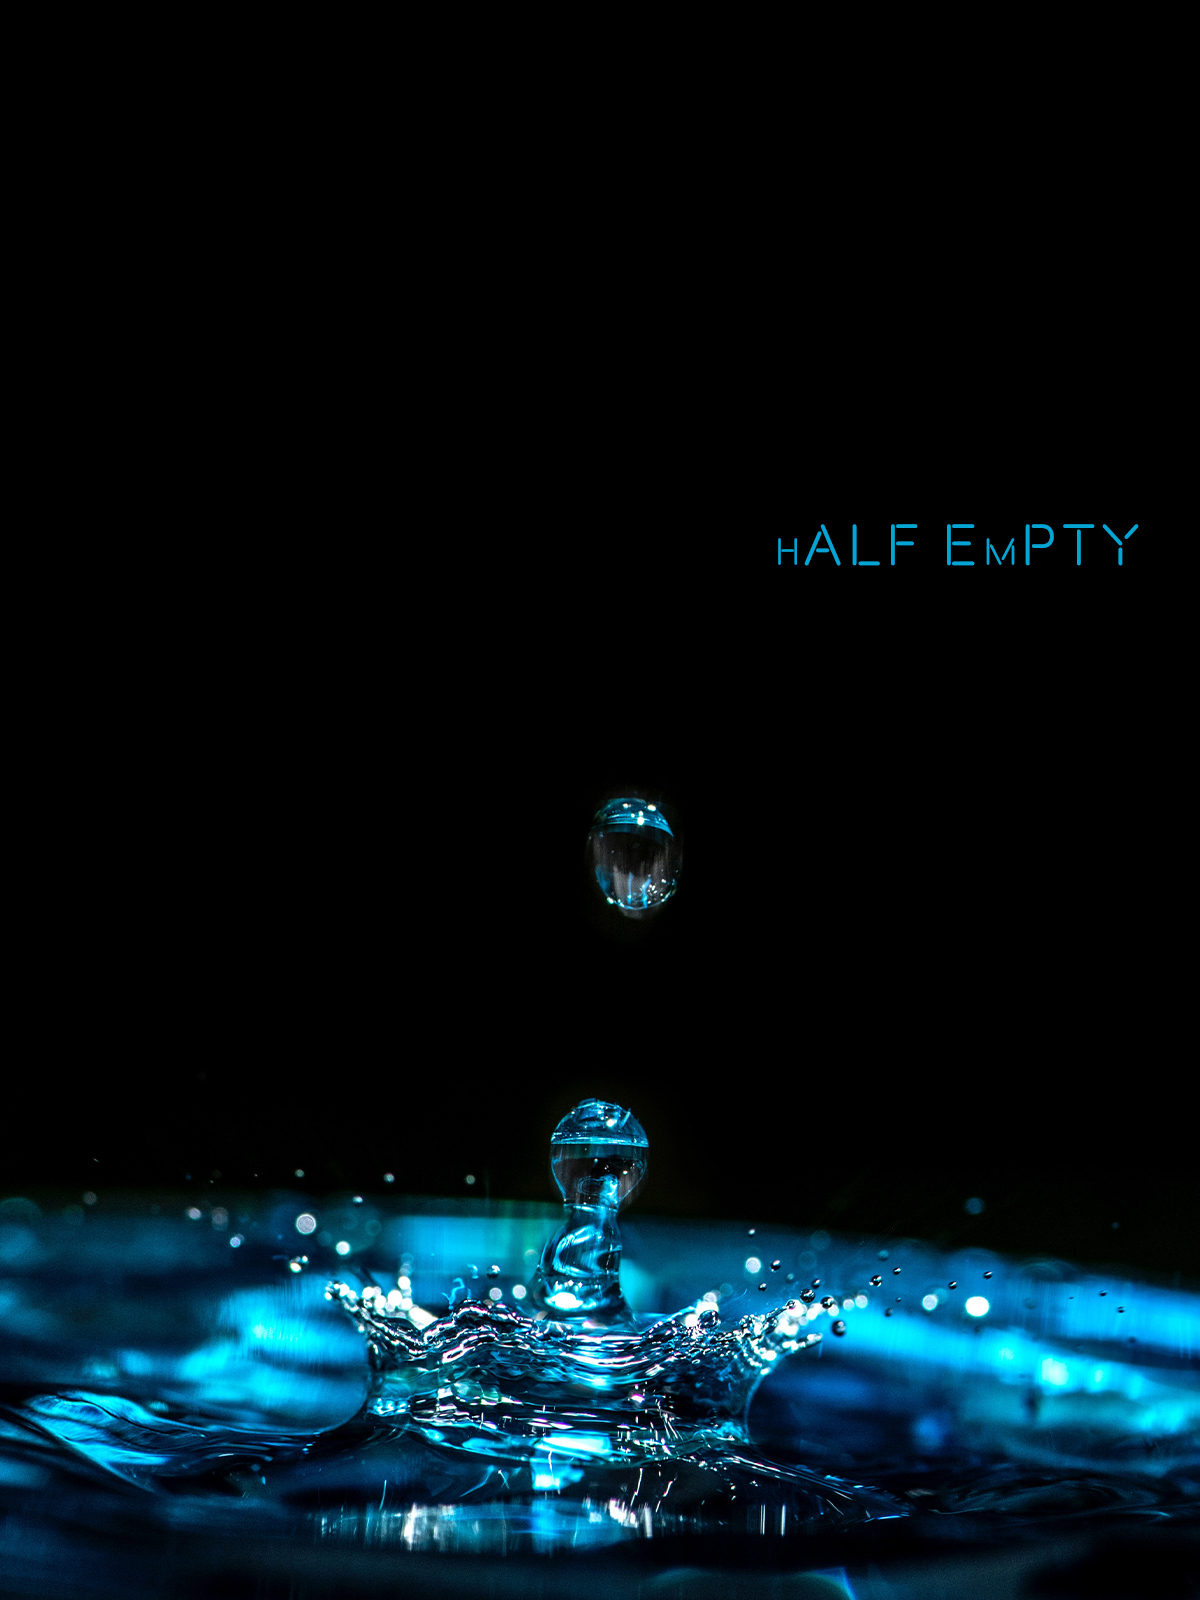 Half Empty